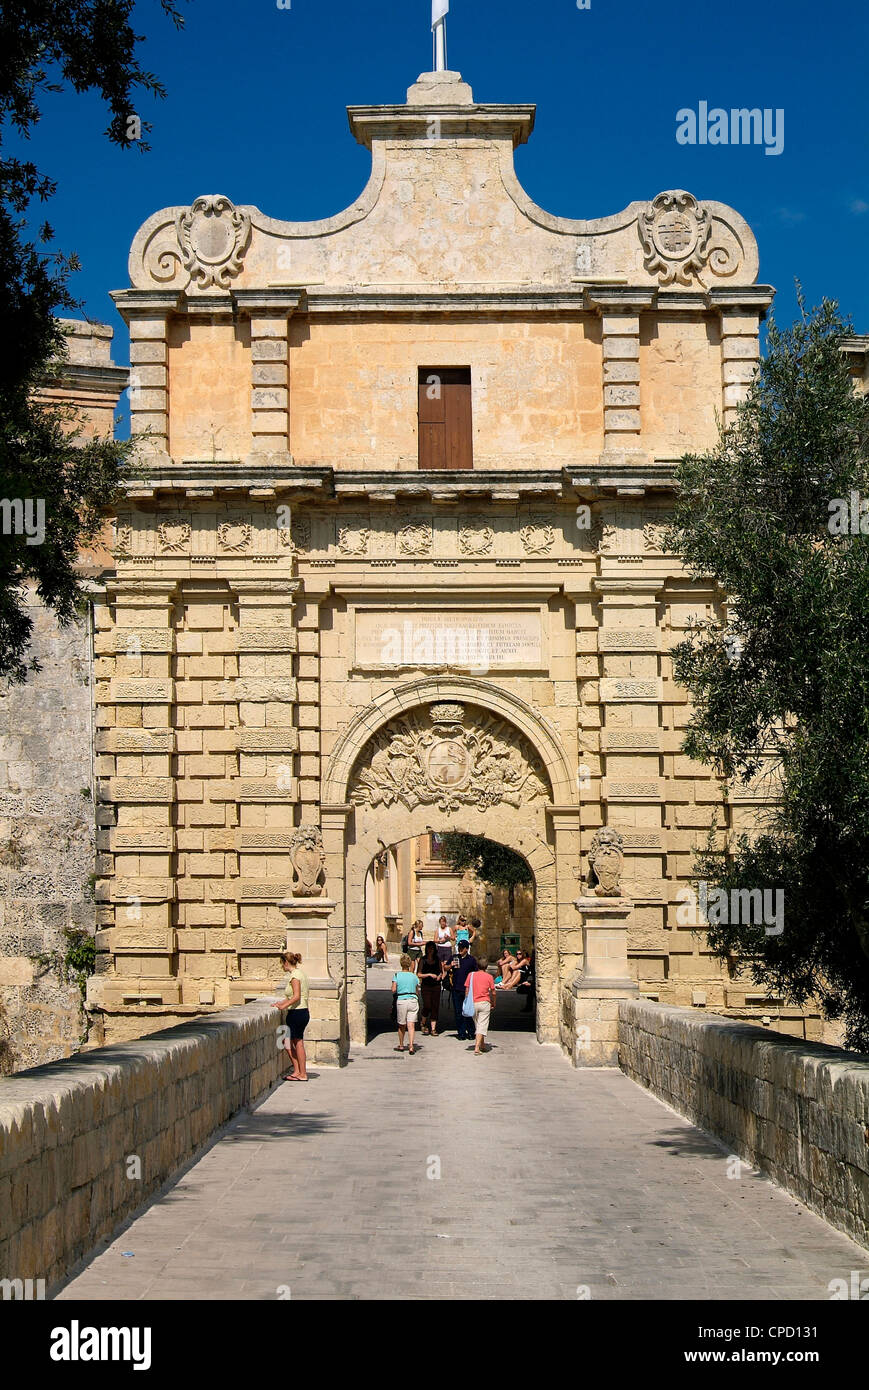 Gate to old town, Mdina, Malta, Mediterranean, Europe Stock Photo